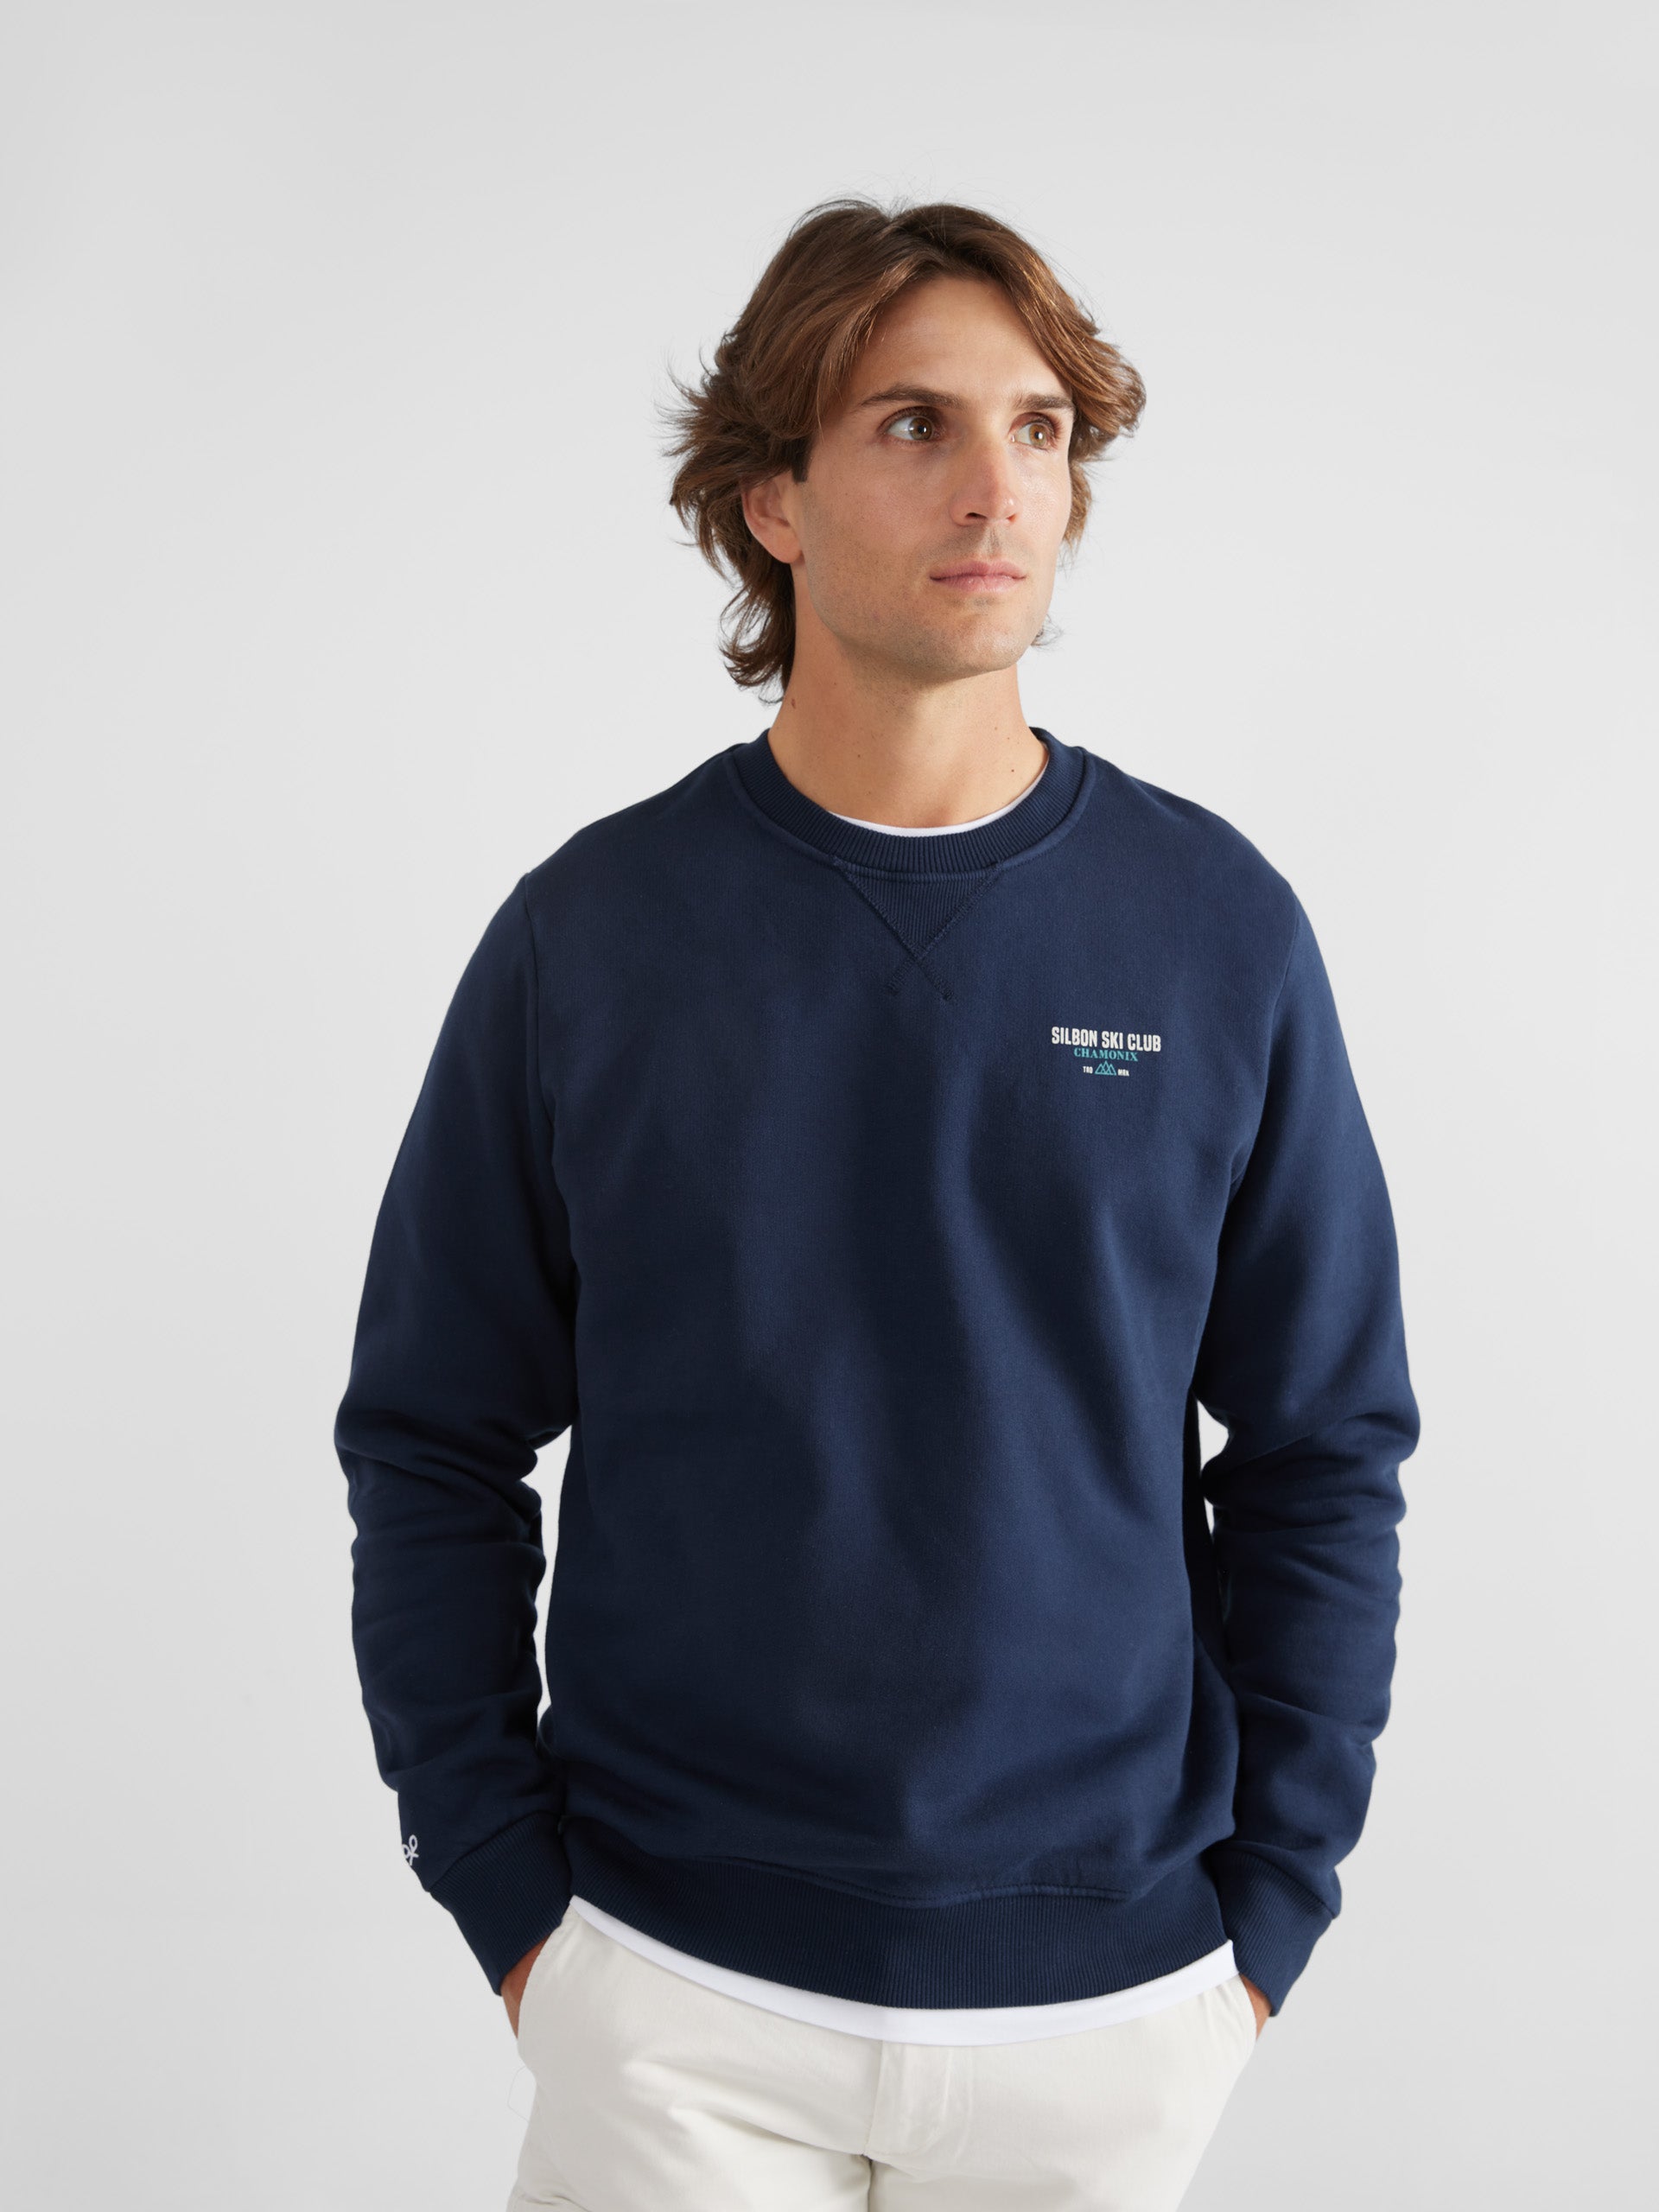 Navy blue ski club sweatshirt